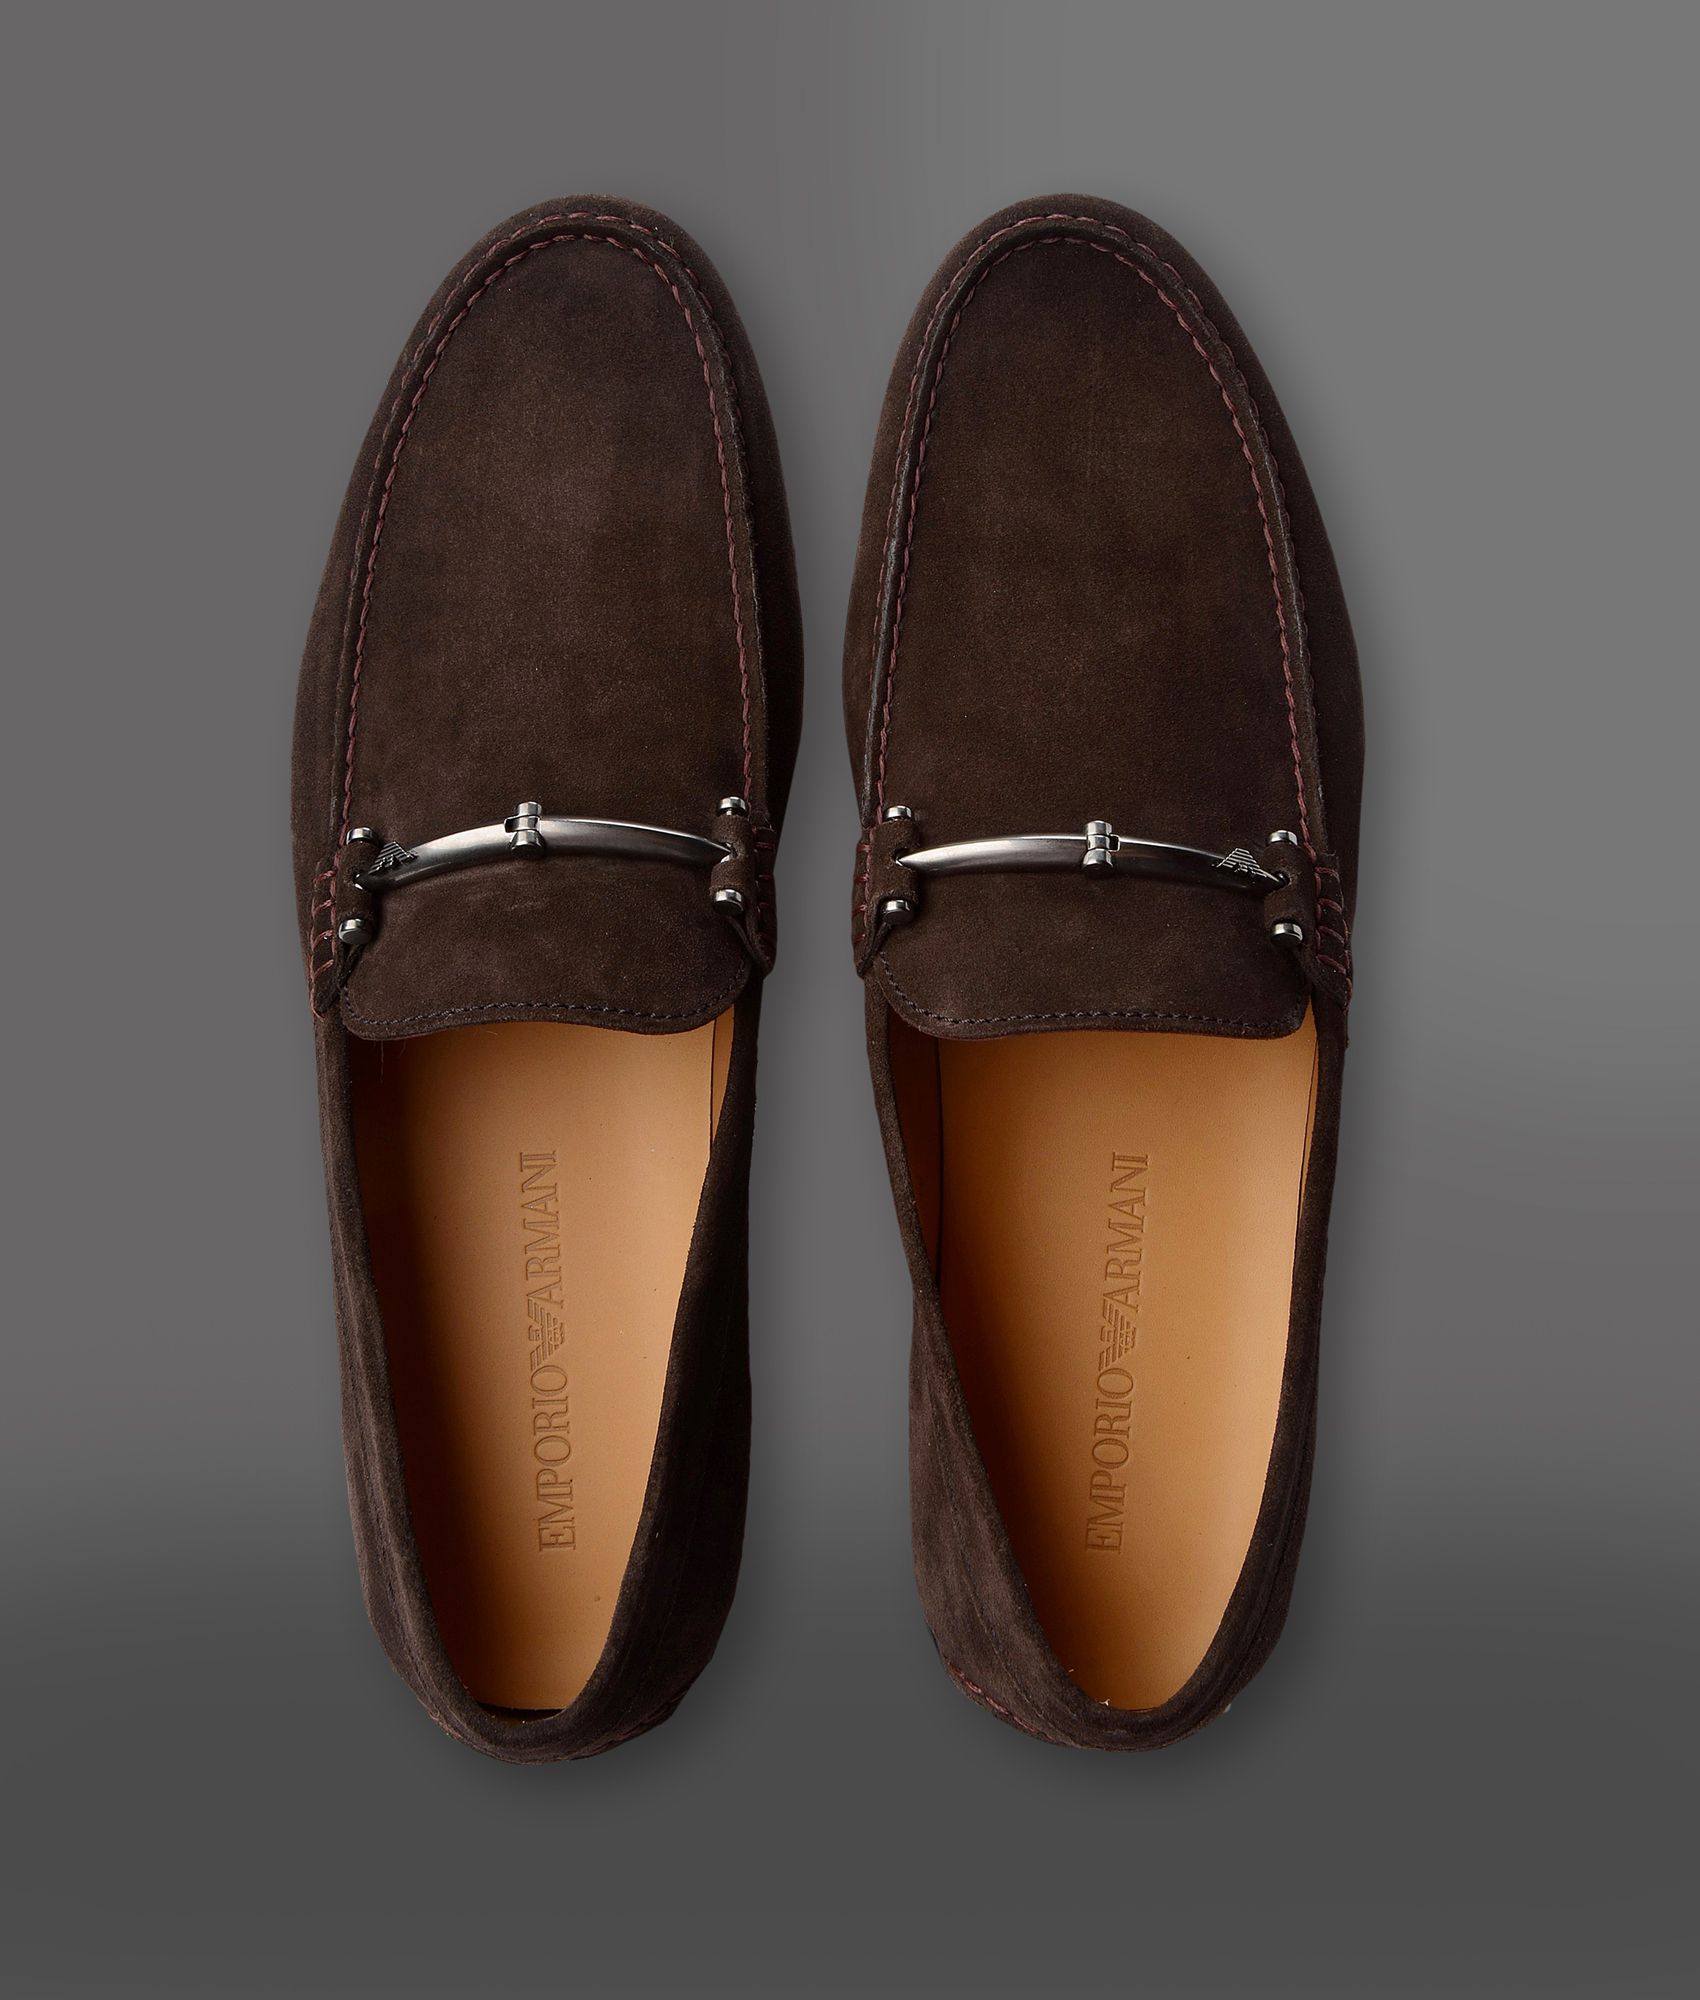 giorgio armani loafers shoes mens - 54 